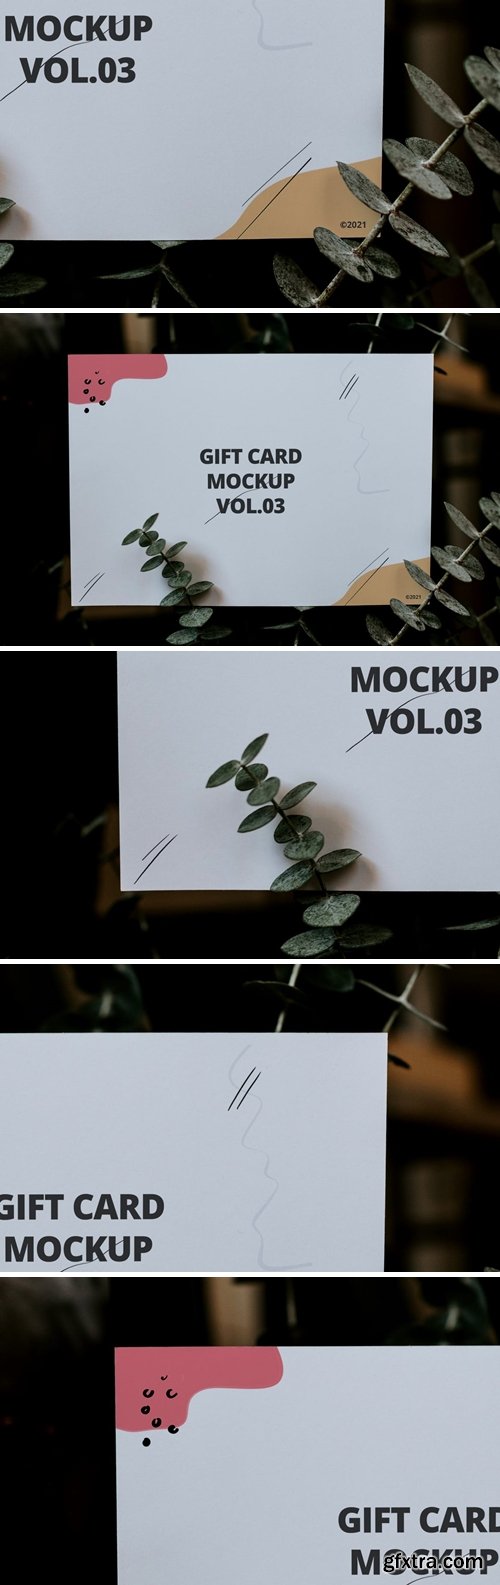 Gift Card Mockup Vol.03